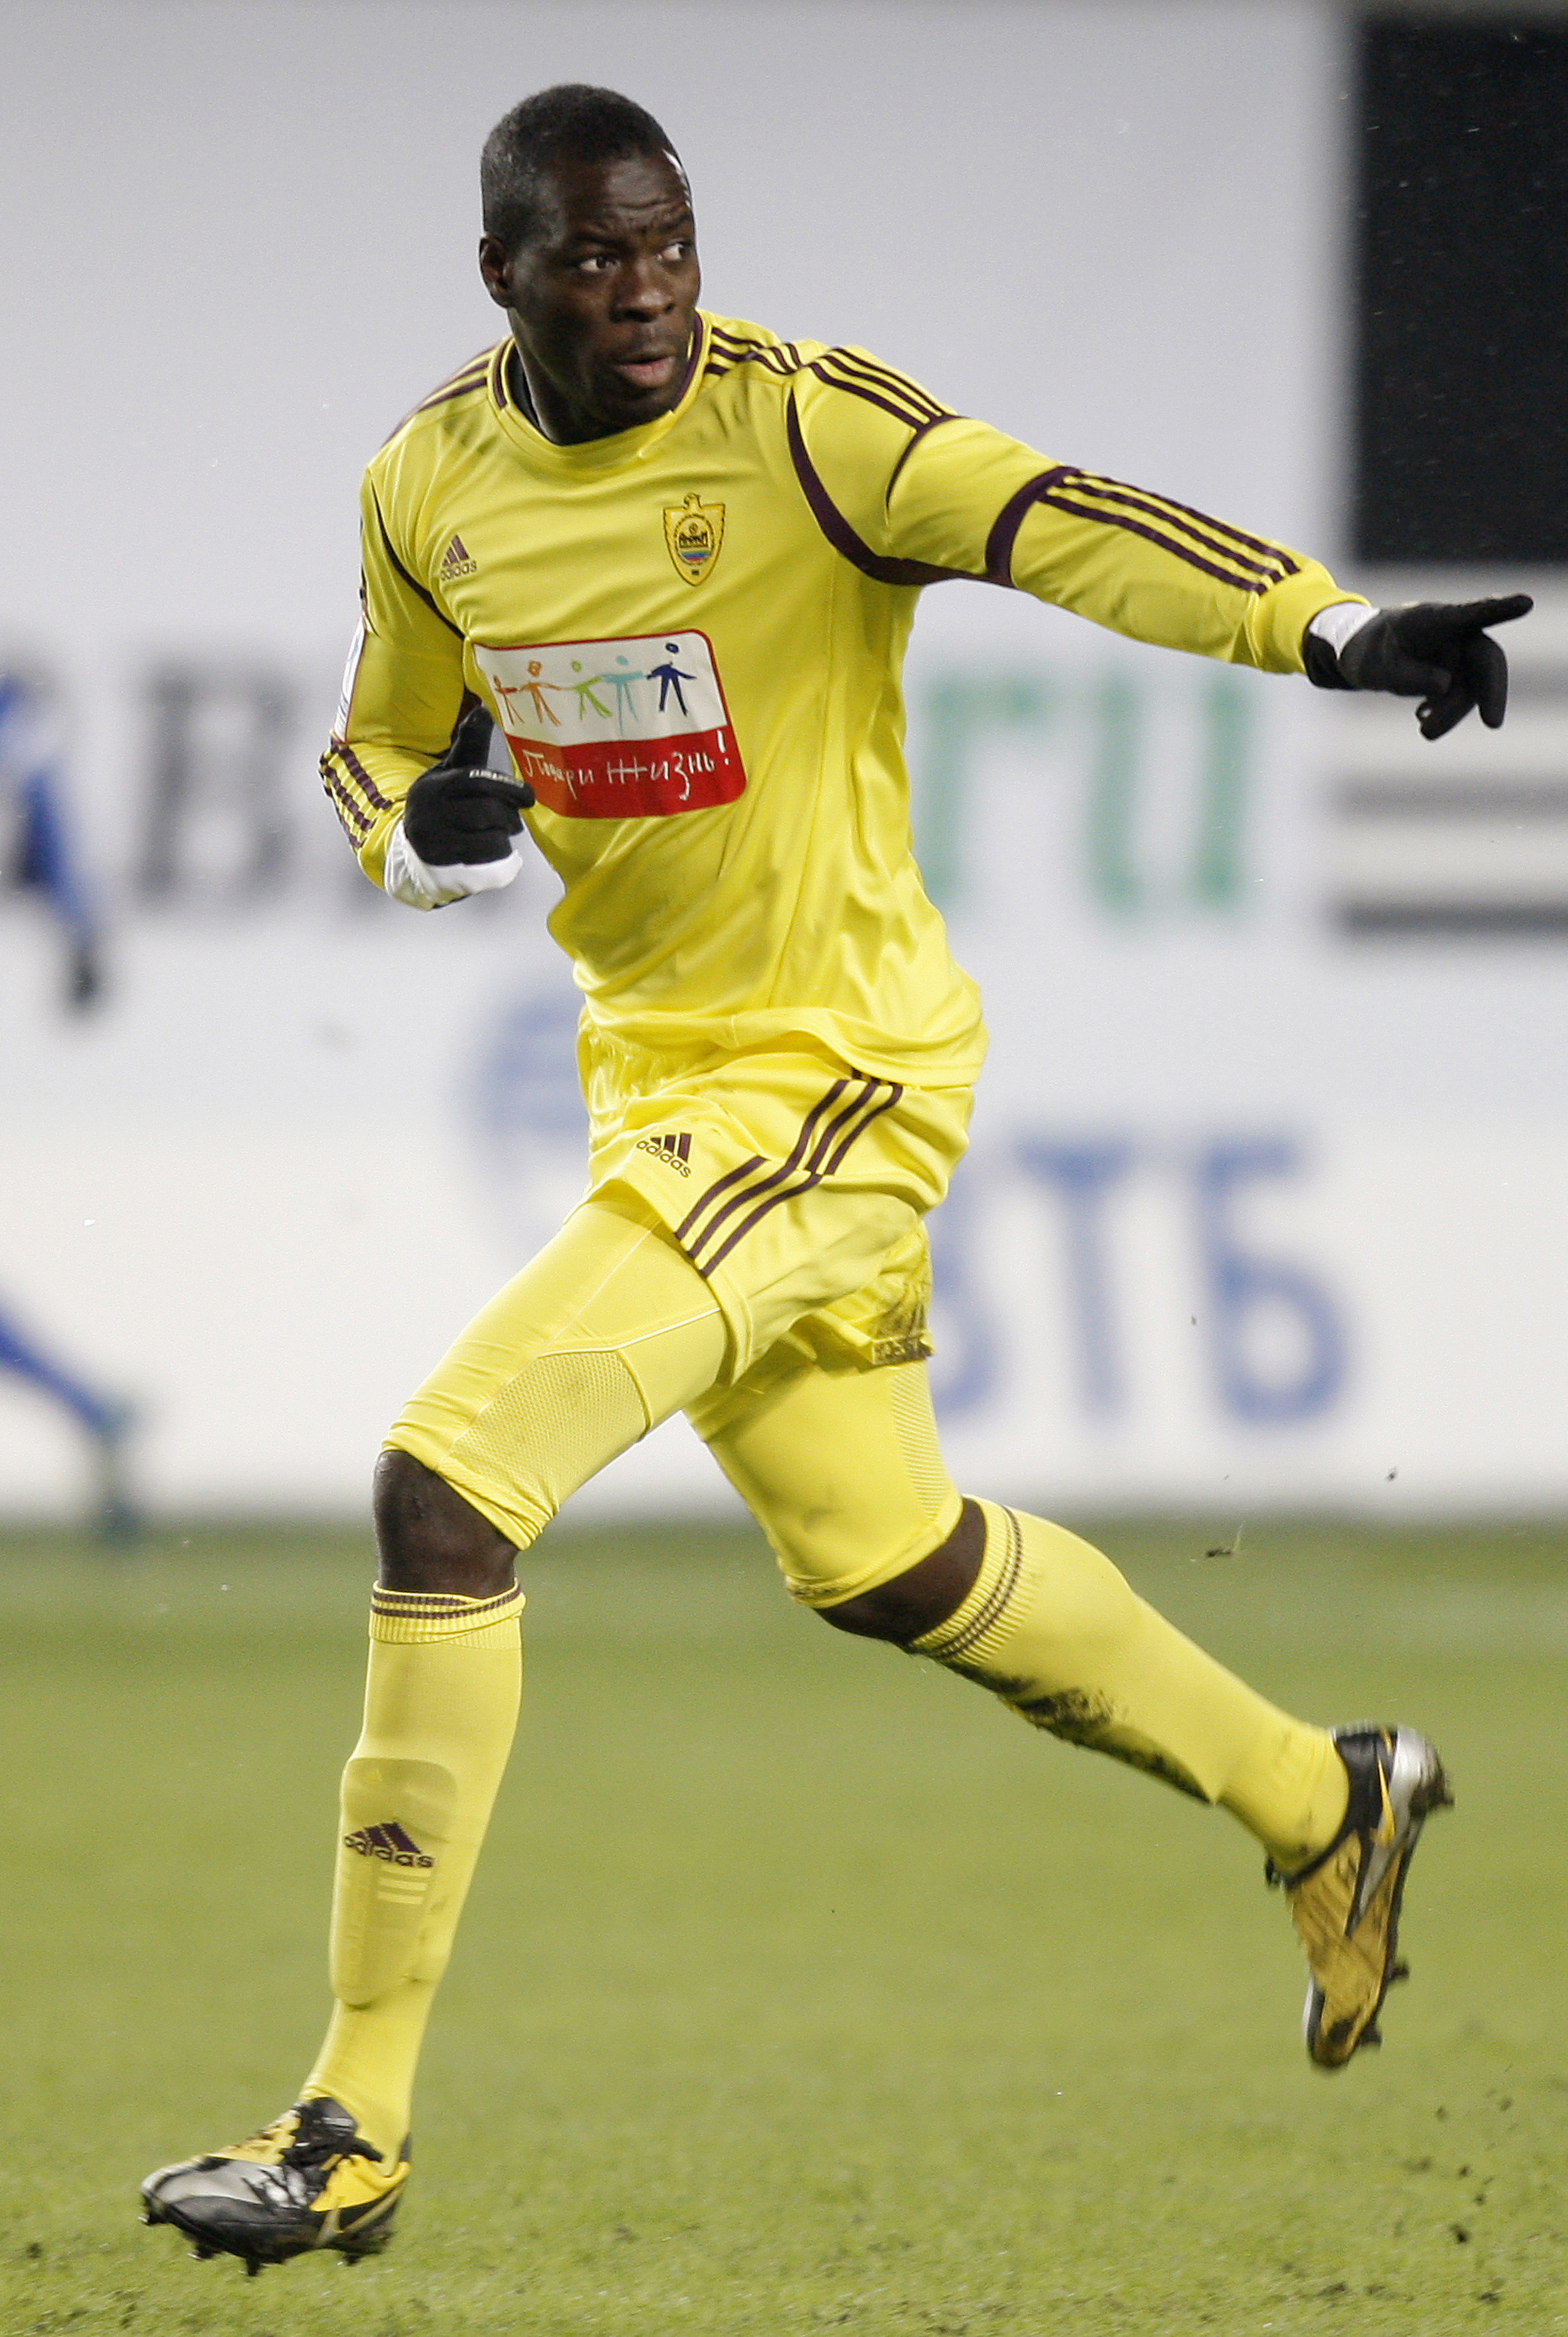 Christopher Samba fick en banan kastad mot sig efter matchen mellan hans Anzhi och Lokomotiv Moskva.